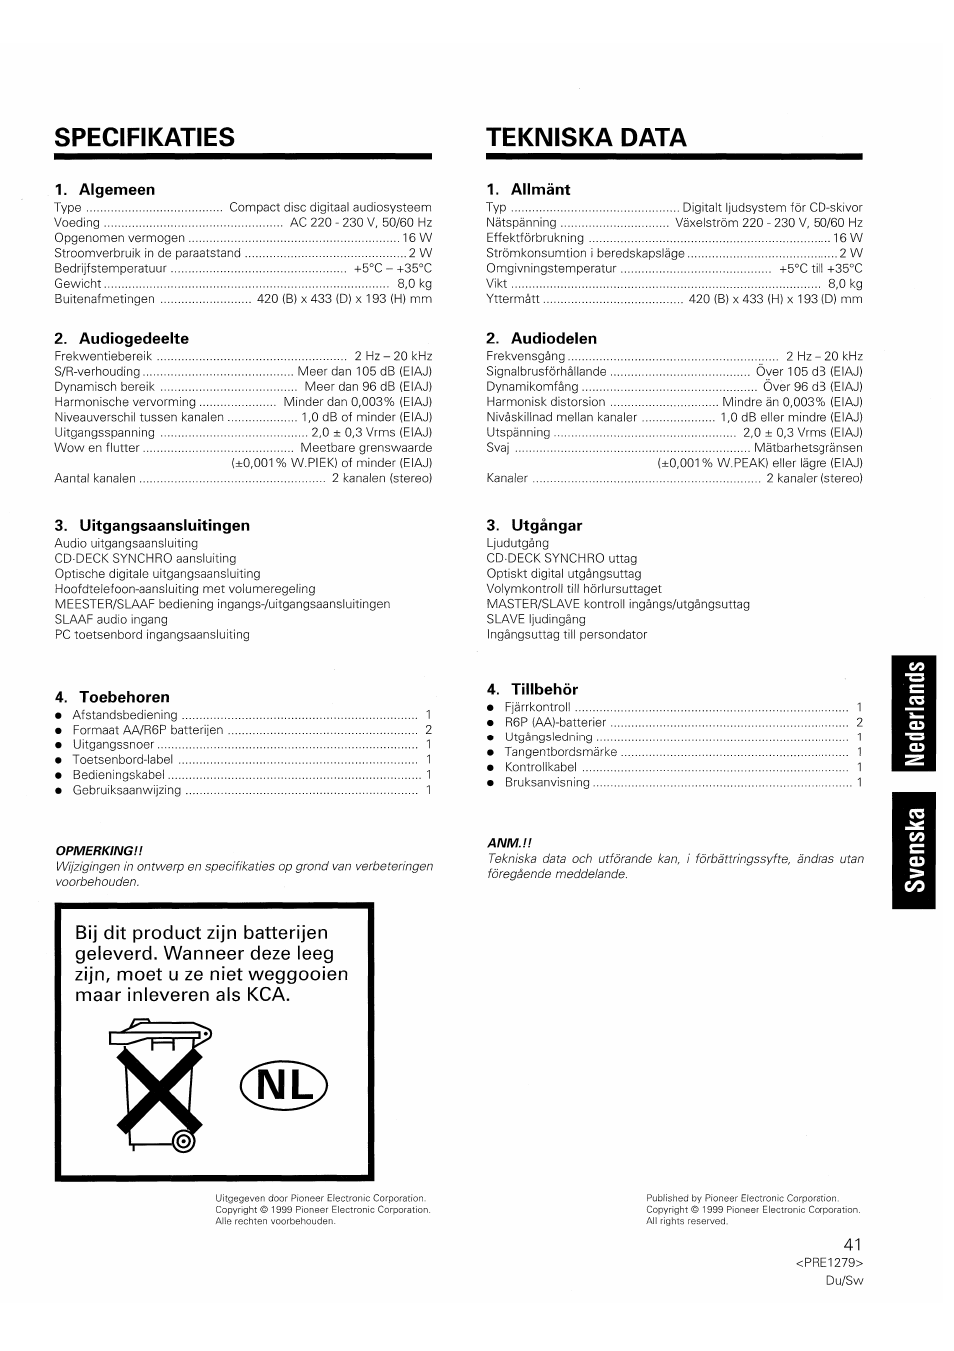 Specifi katies, Tekniska data, Specieikaties | Specifi katies tekniska data | Pioneer PD-F1007 Manual del usuario | Página 41 / 84